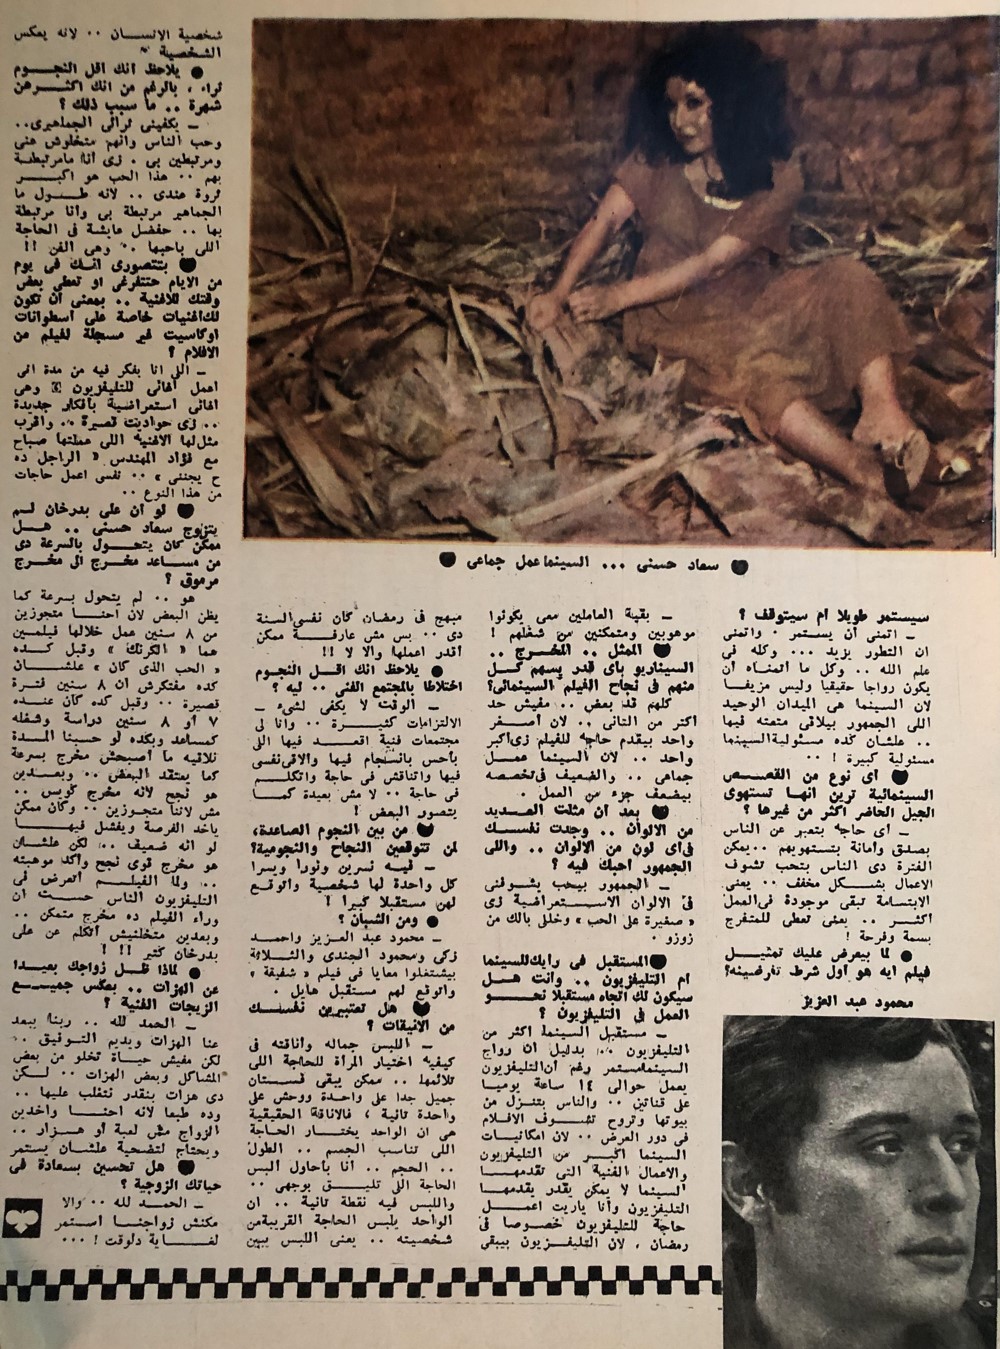 حوار صحفي : حوار صريح جداً مع سعاد حسني 1977 م 422